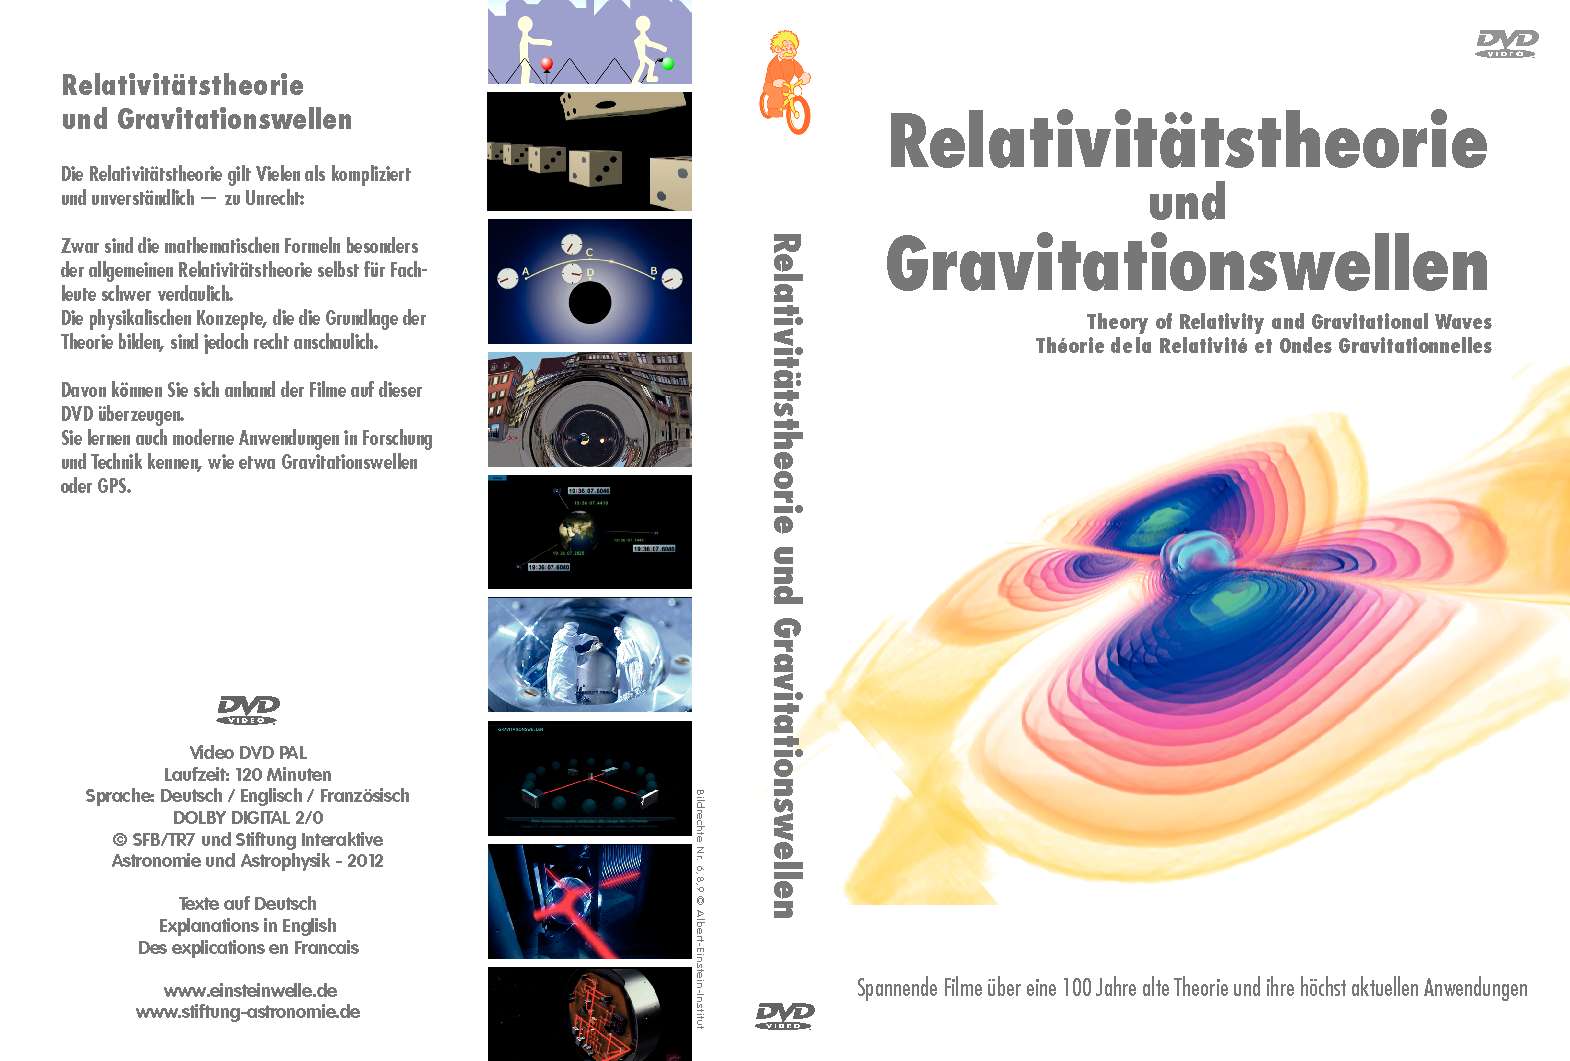 DVD: Relativitätstheorie und Gravitationswellen